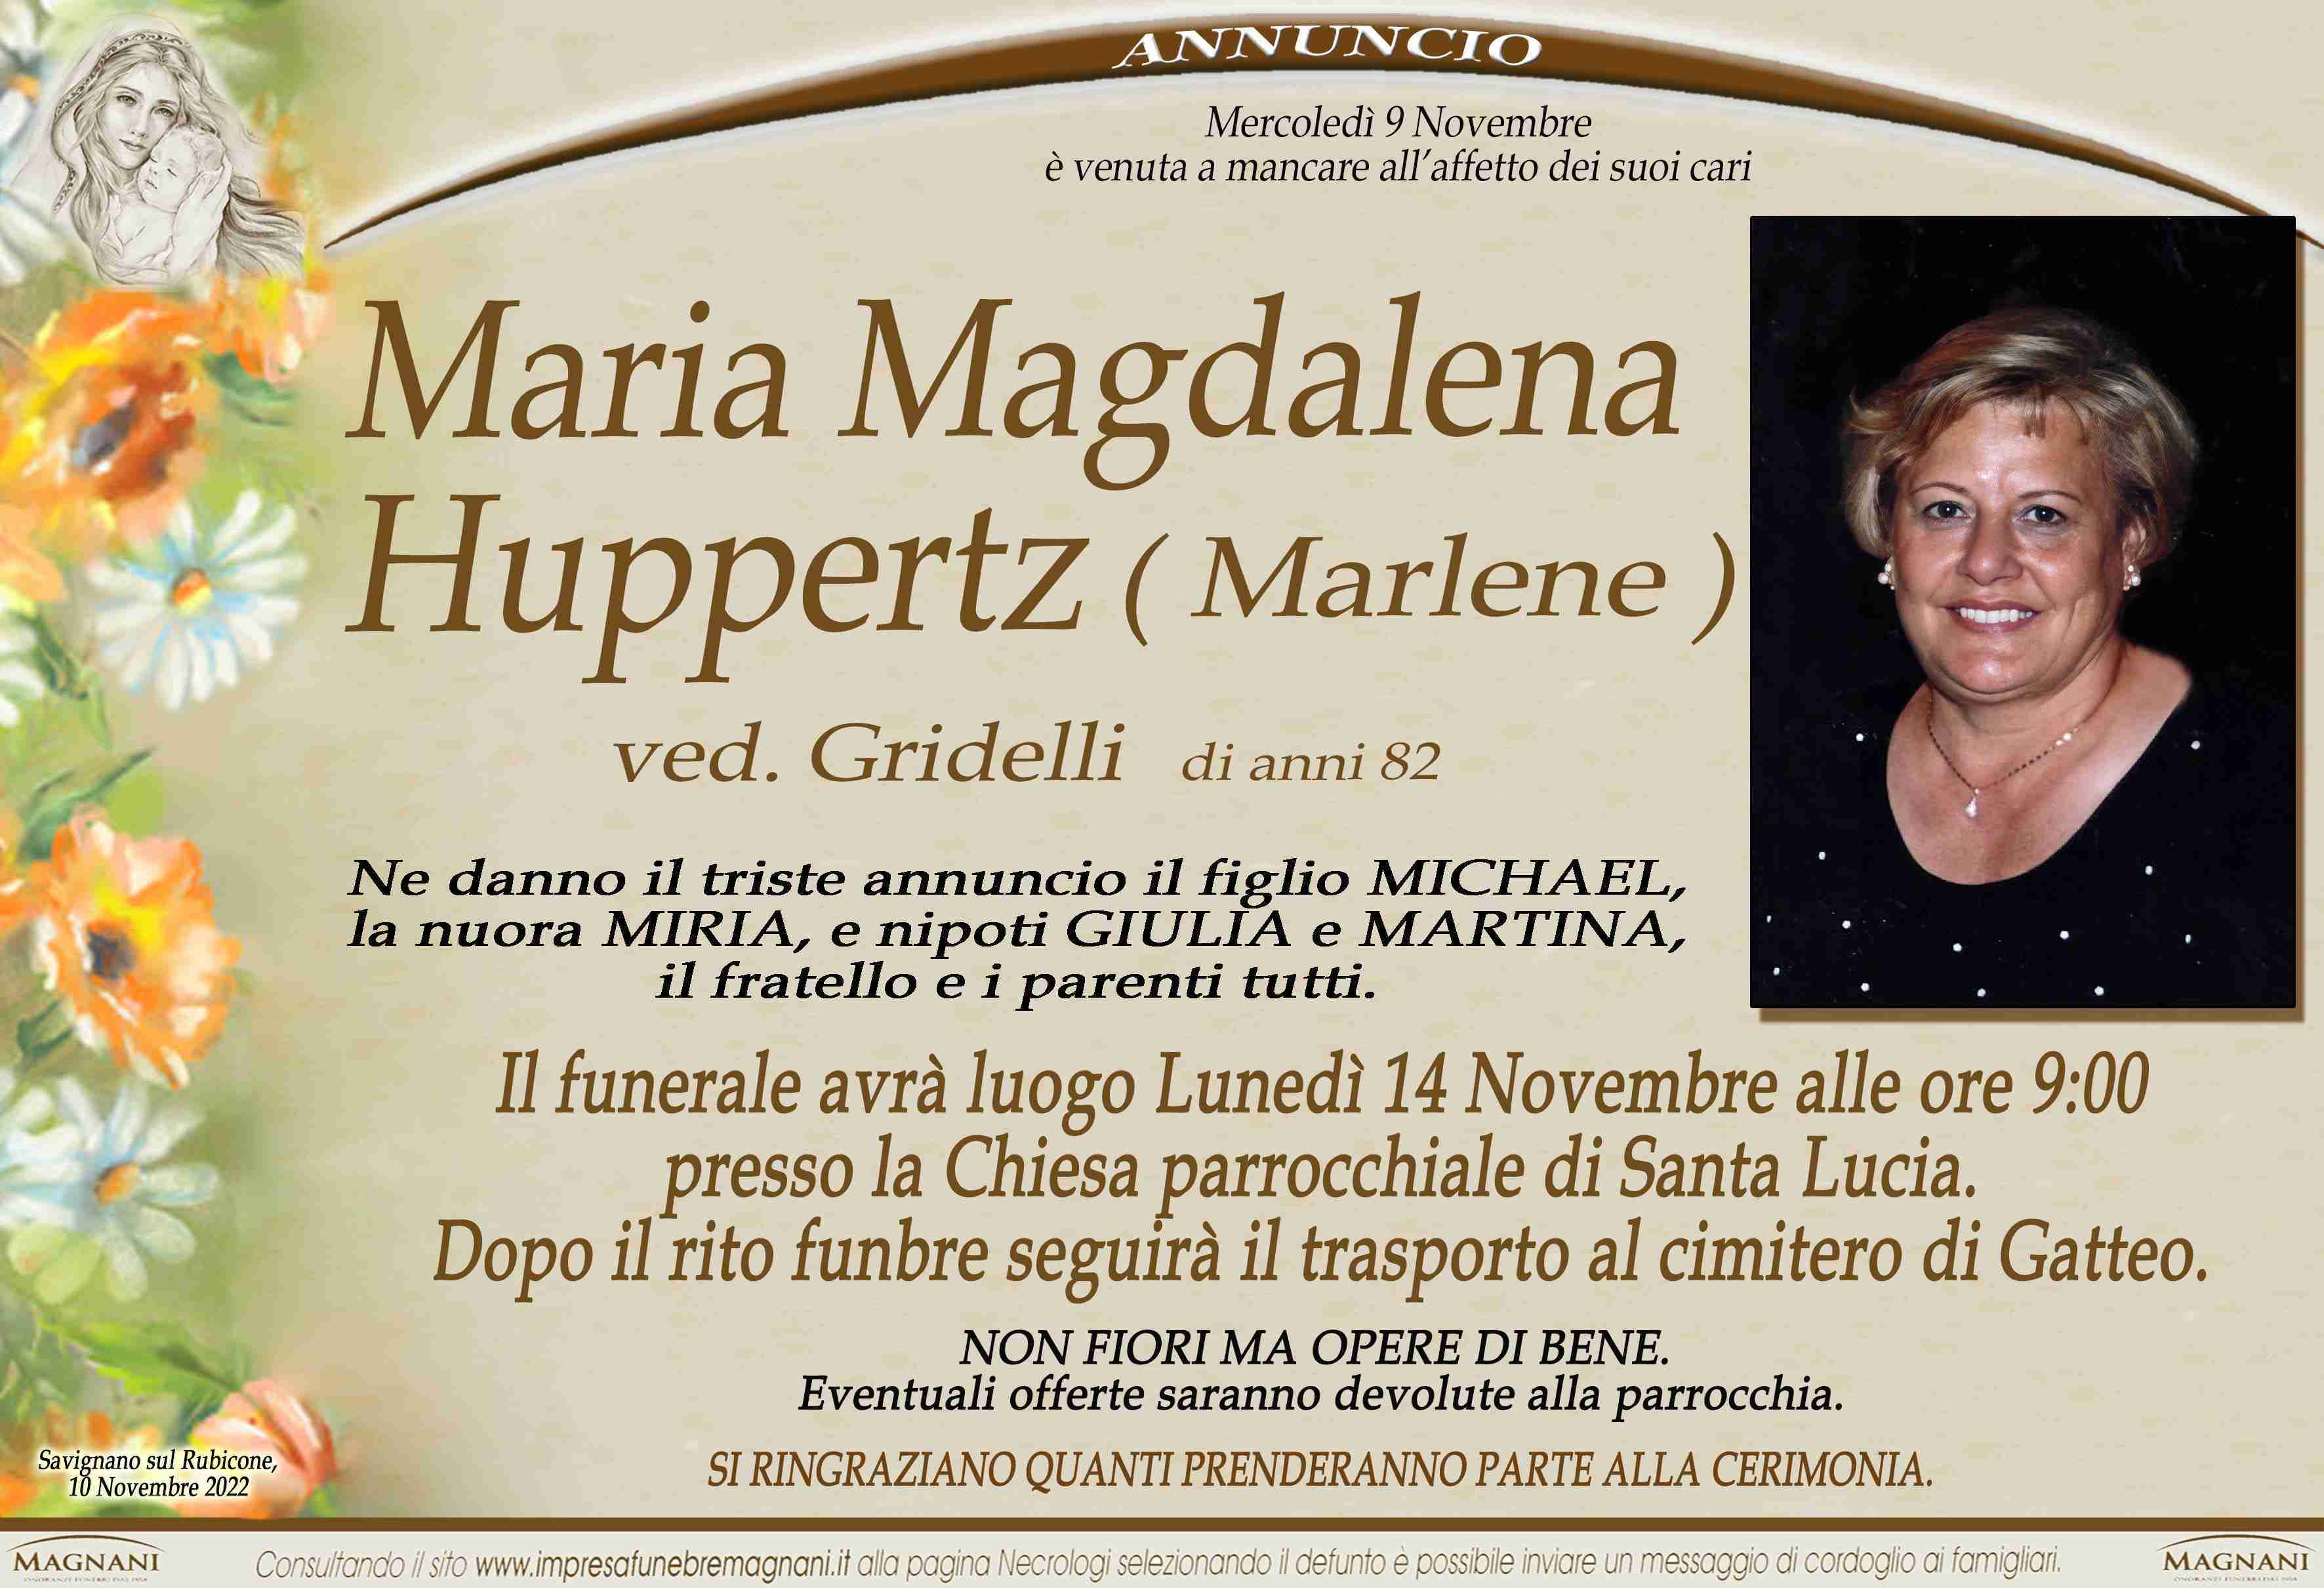 Maria Magdalena Huppertz